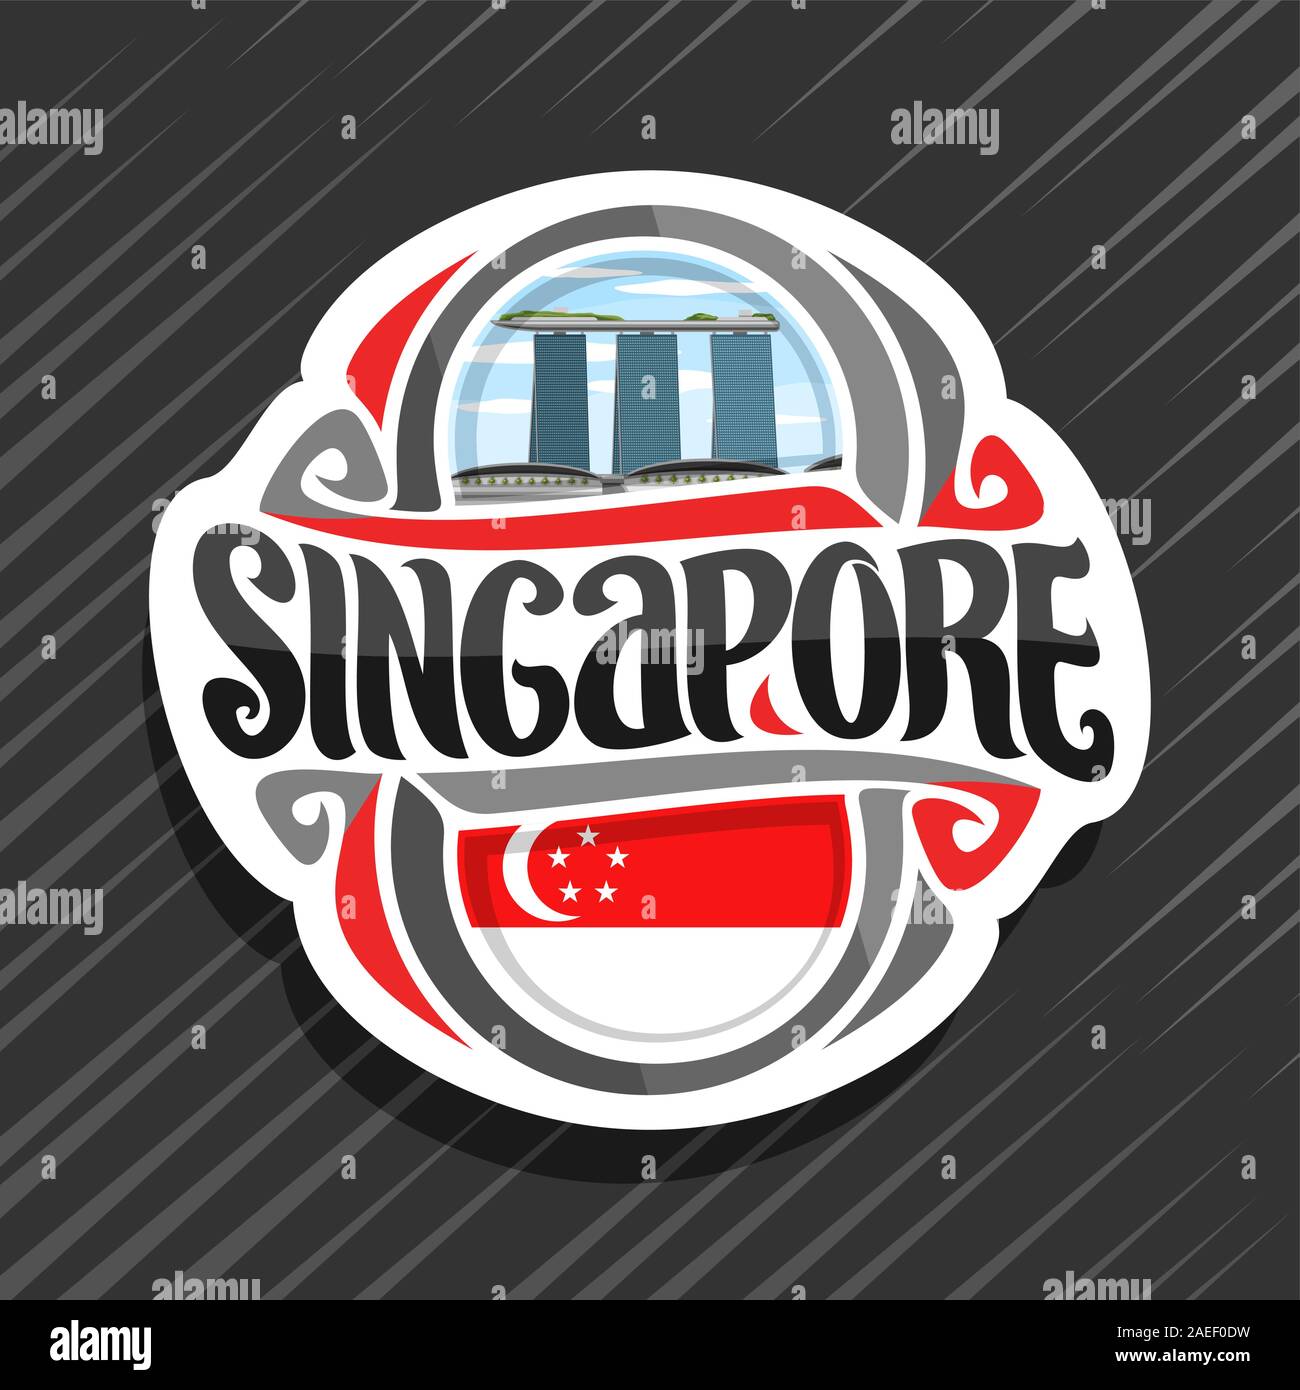 Vektor logo für Singapur Land, Kühlschrank Magnet mit State Flag, original brush Schrift für Wort Singapur und nationales Symbol - Resort Hotel Marina Stock Vektor